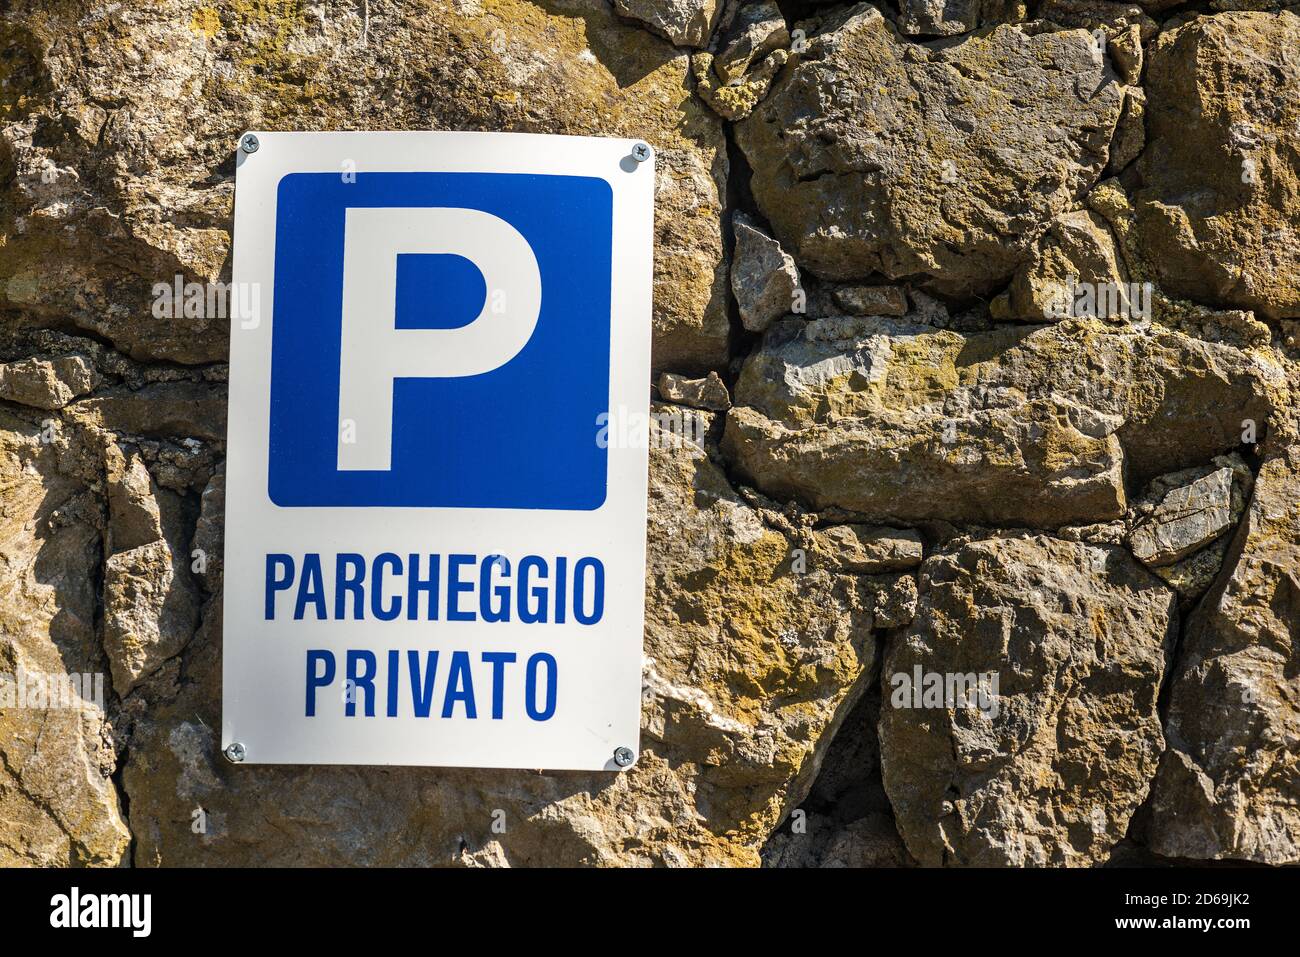 Parcheggio Privato, bleu et blanc signalisation parking privé en langue italienne accrochée sur un mur en pierre. Ligurie, Italie, Europe Banque D'Images